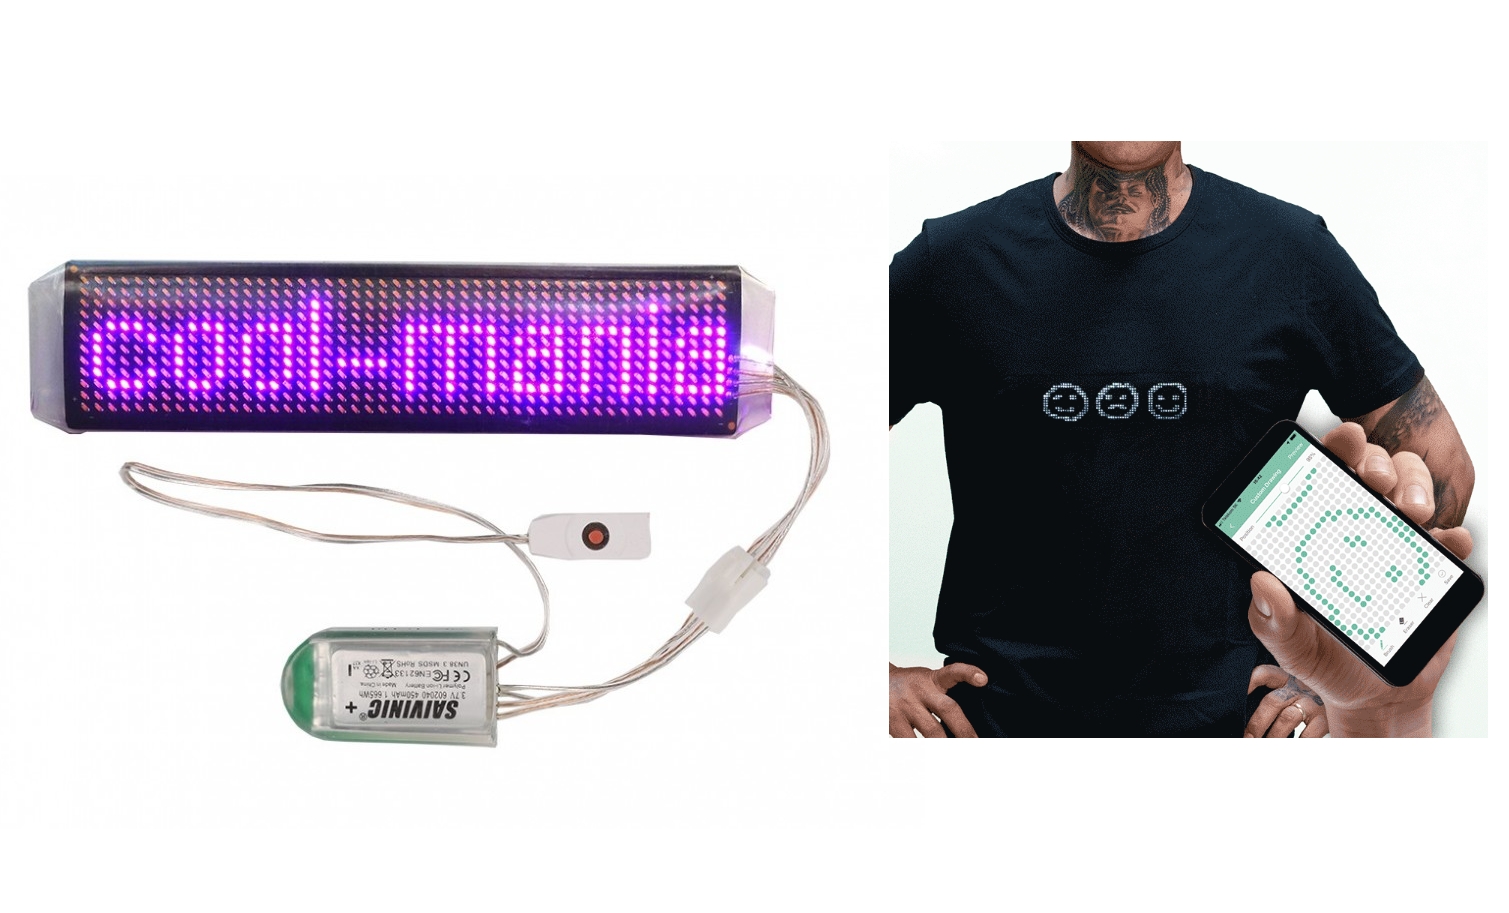 LED pás fialový ovládání přes app s bluetooth 3,5 x 15 cm